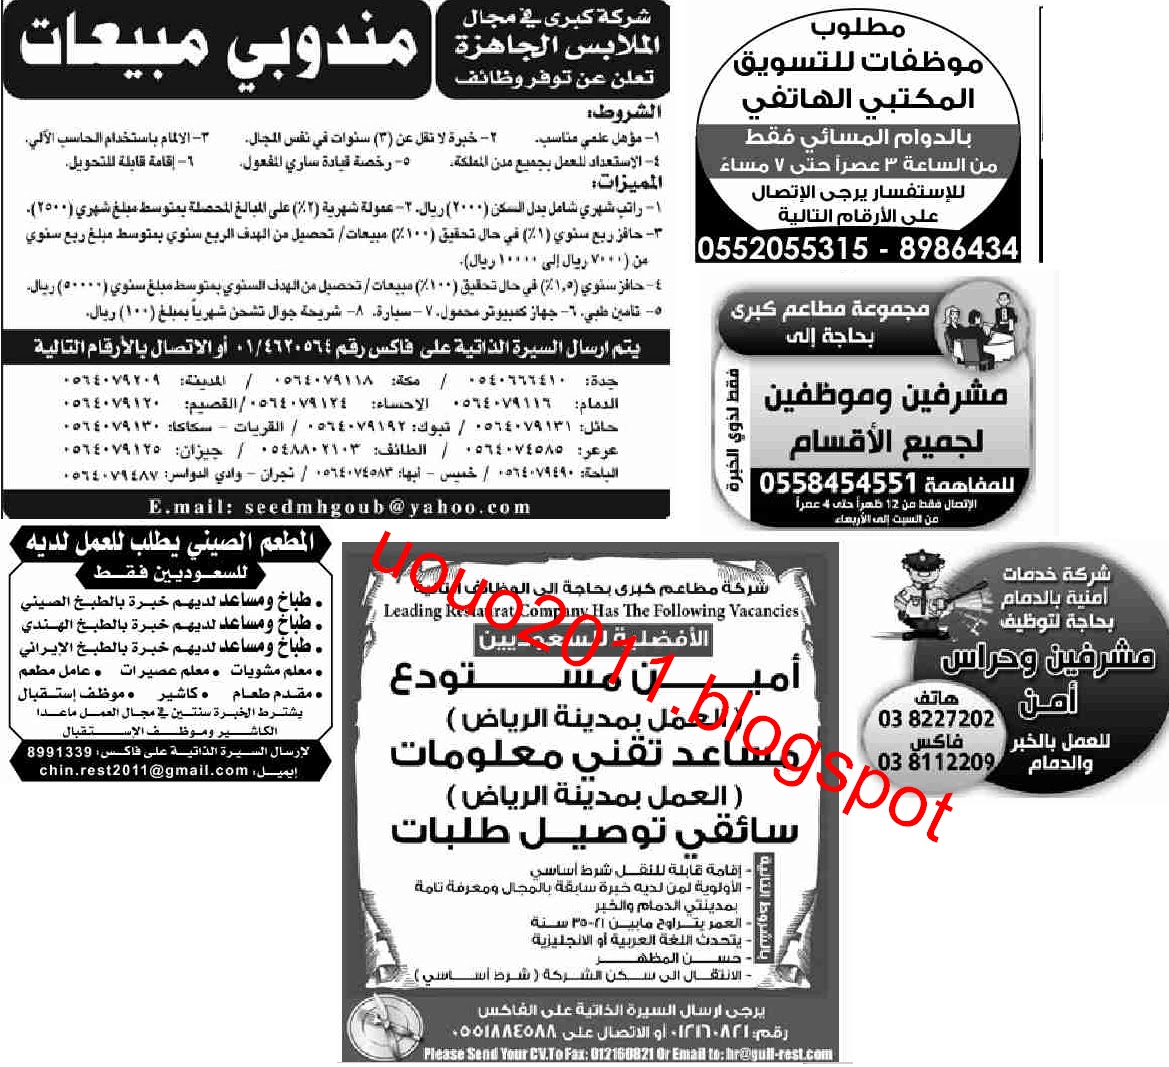 وظائف السعودية - وظائف جريدة الوسيلة الدمام 14 مايو 2011 1